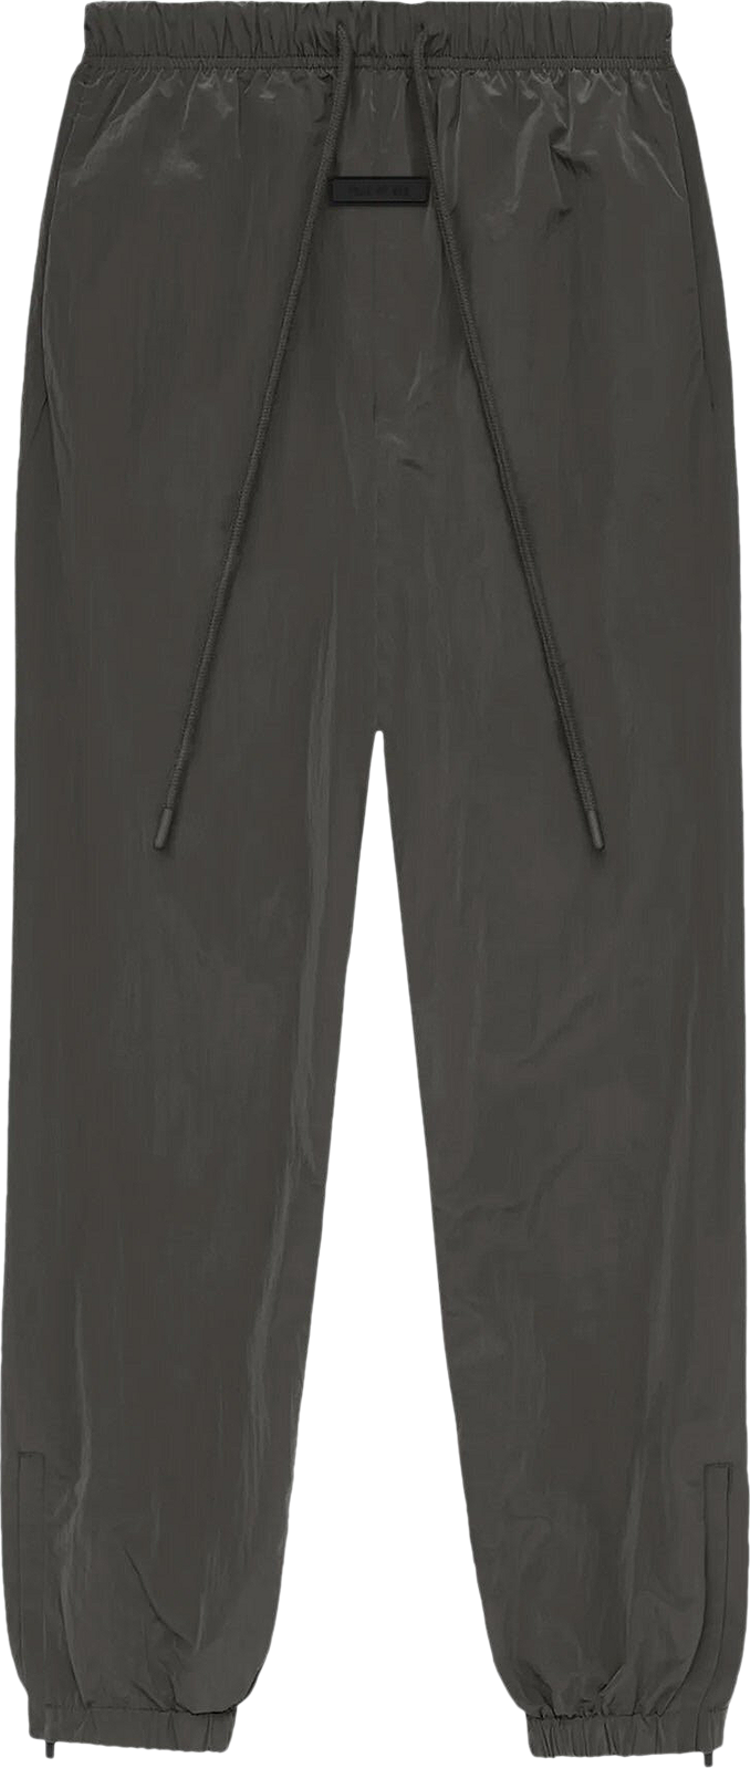 Y-3 Crinkle Nylon Pants